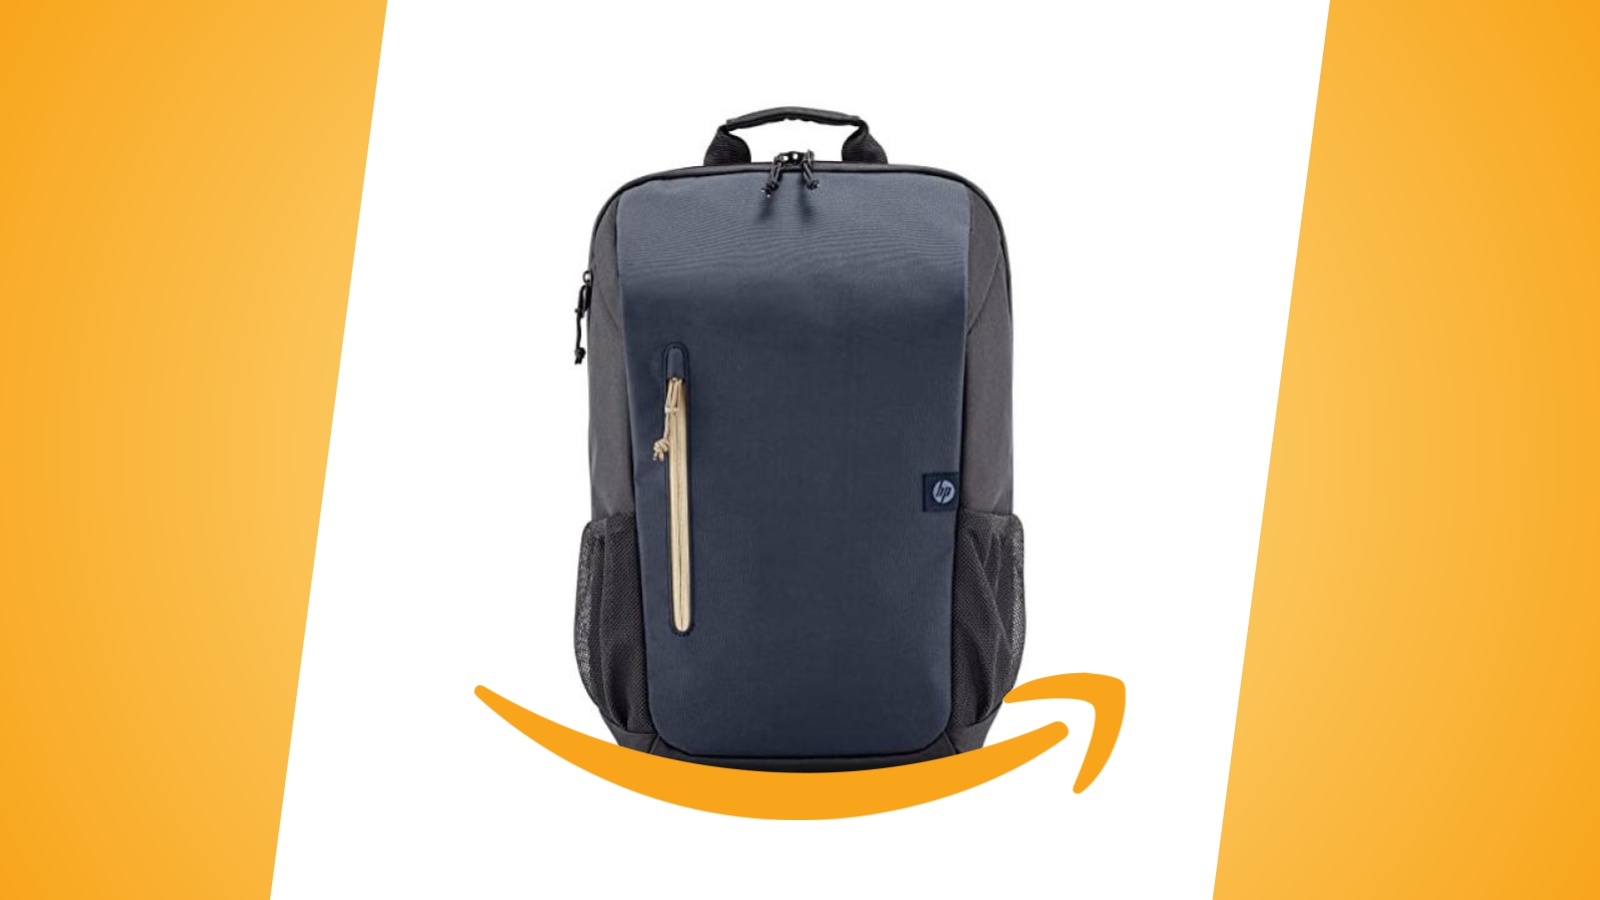 Offerte Amazon: lo zaino HP per notebook da 15.6 pollici in sconto al prezzo minimo storico